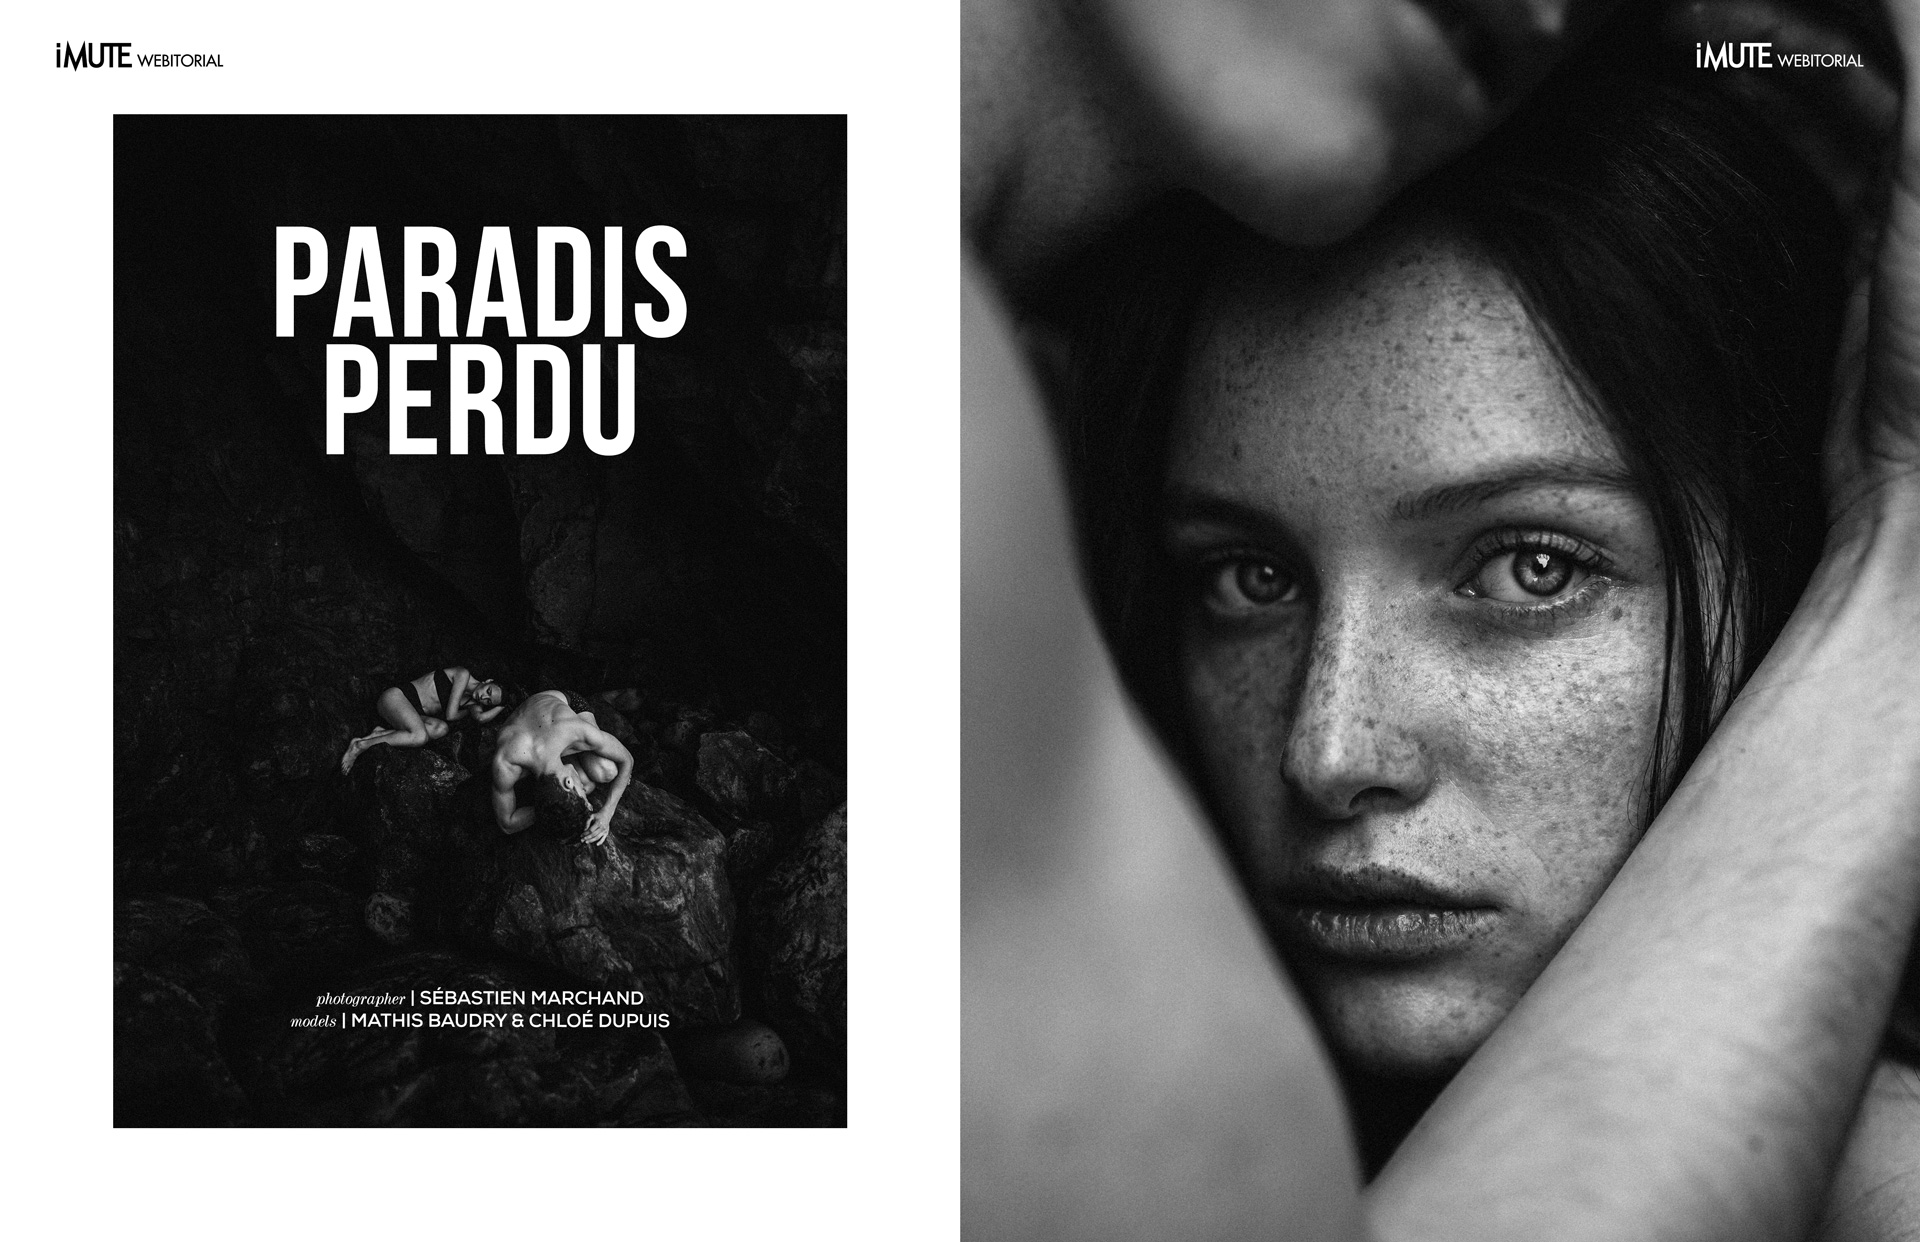 PARADIS PERDU webitorial for iMute Magazine  PHOTOGRAPHER | SÉBASTIEN MARCHAND MODELS | MATHIS BAUDRY & CHLOÉ DUPUIS